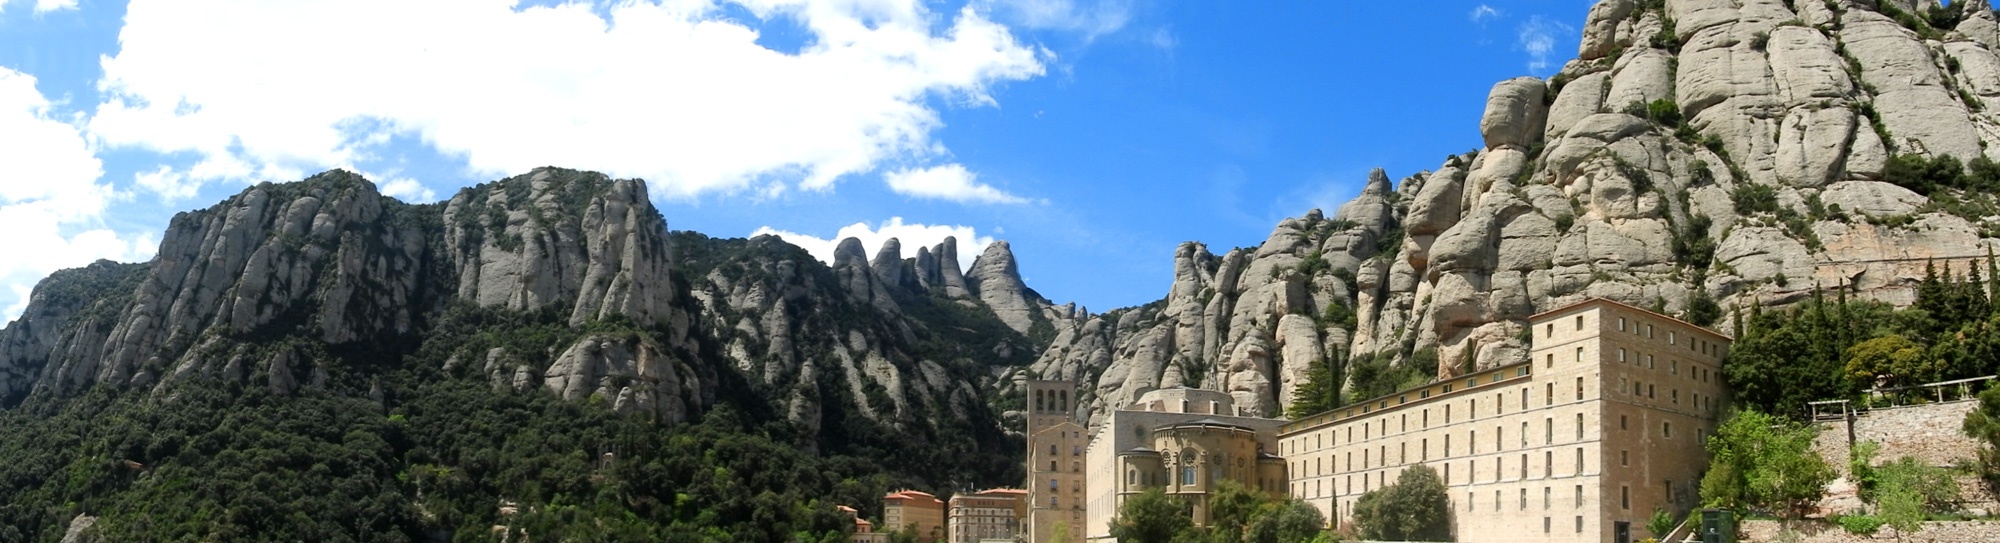 Montserrat, le mont scié